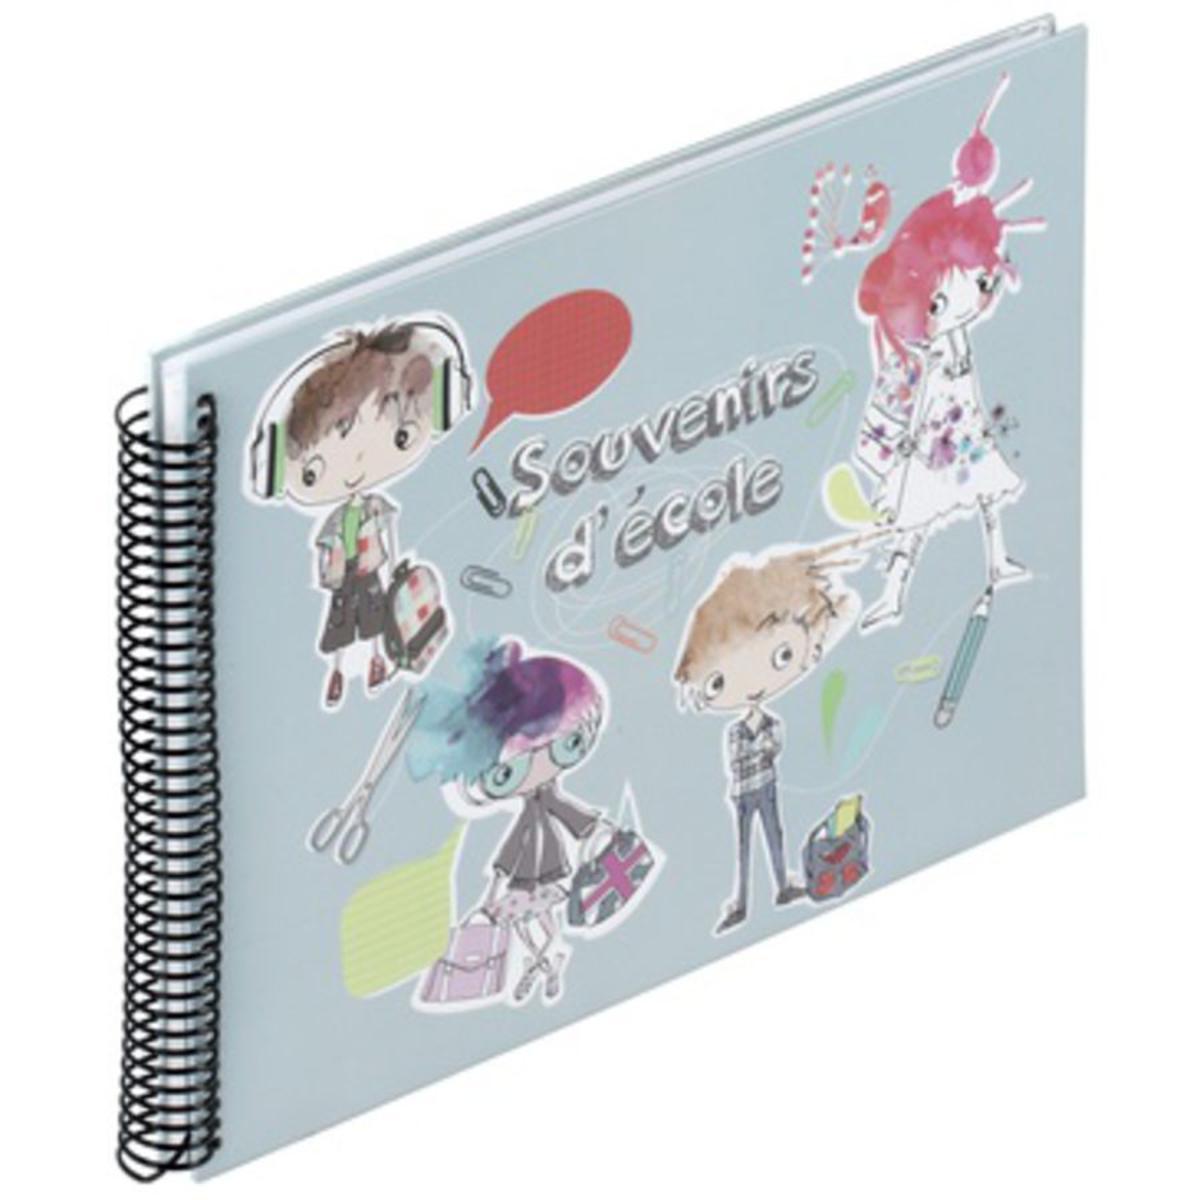 Album Souvenir Ecole - 24,5 x 34,6 cm - Couverture carton - Feuillets papier - Multicolore